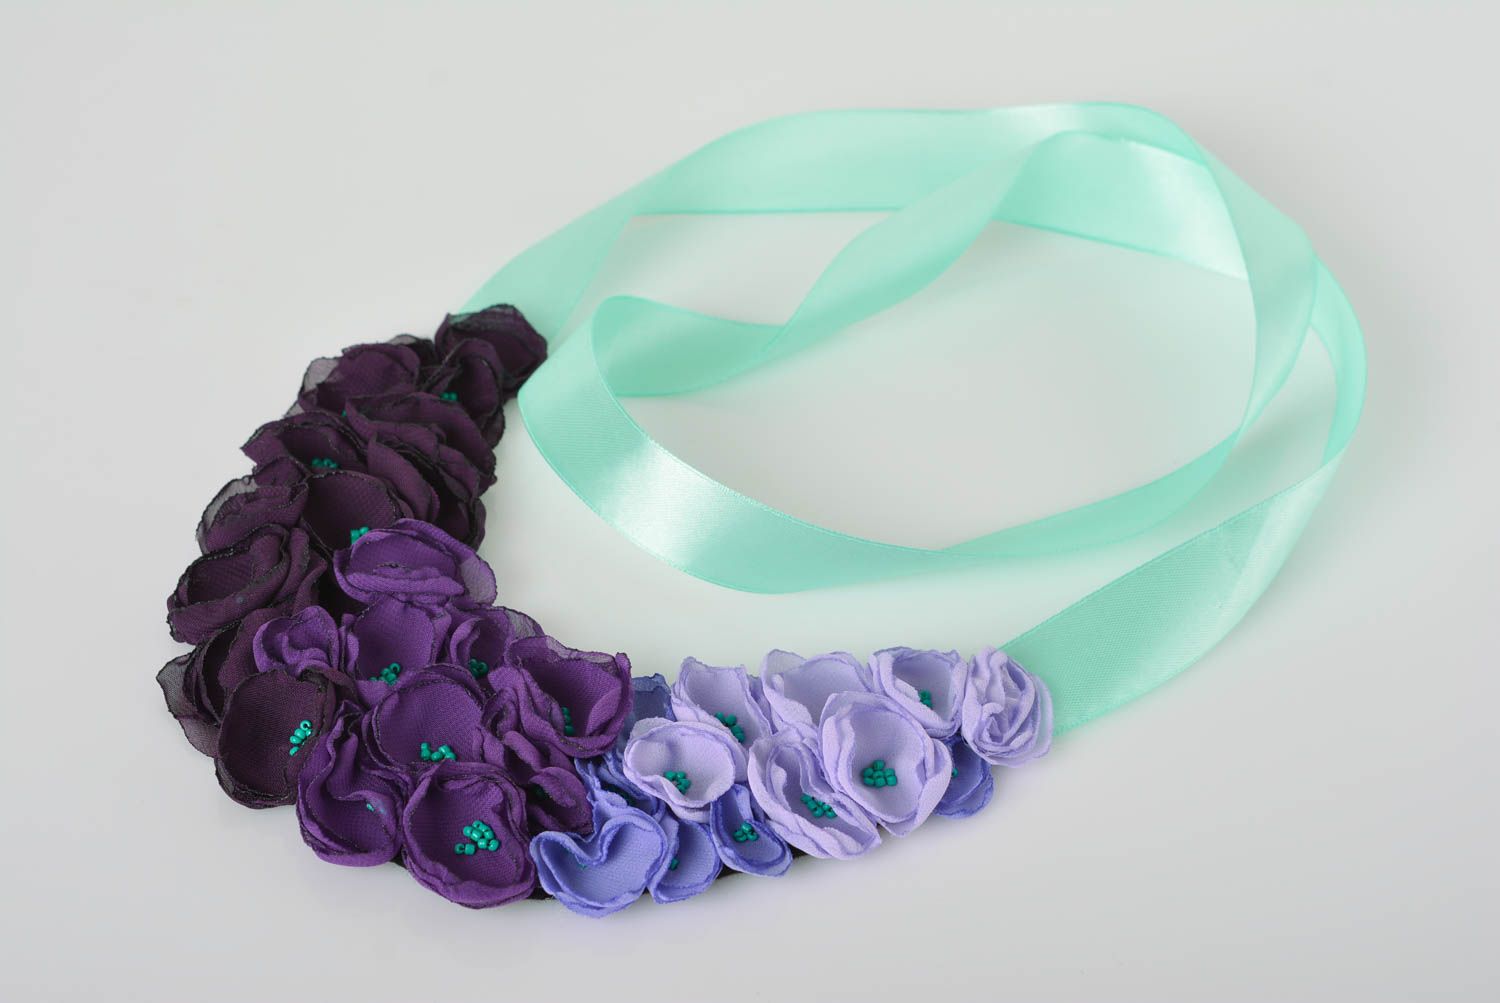 Украшение ручной работы модная бижутерия текстильное колье фиолетовое красивое фото 1